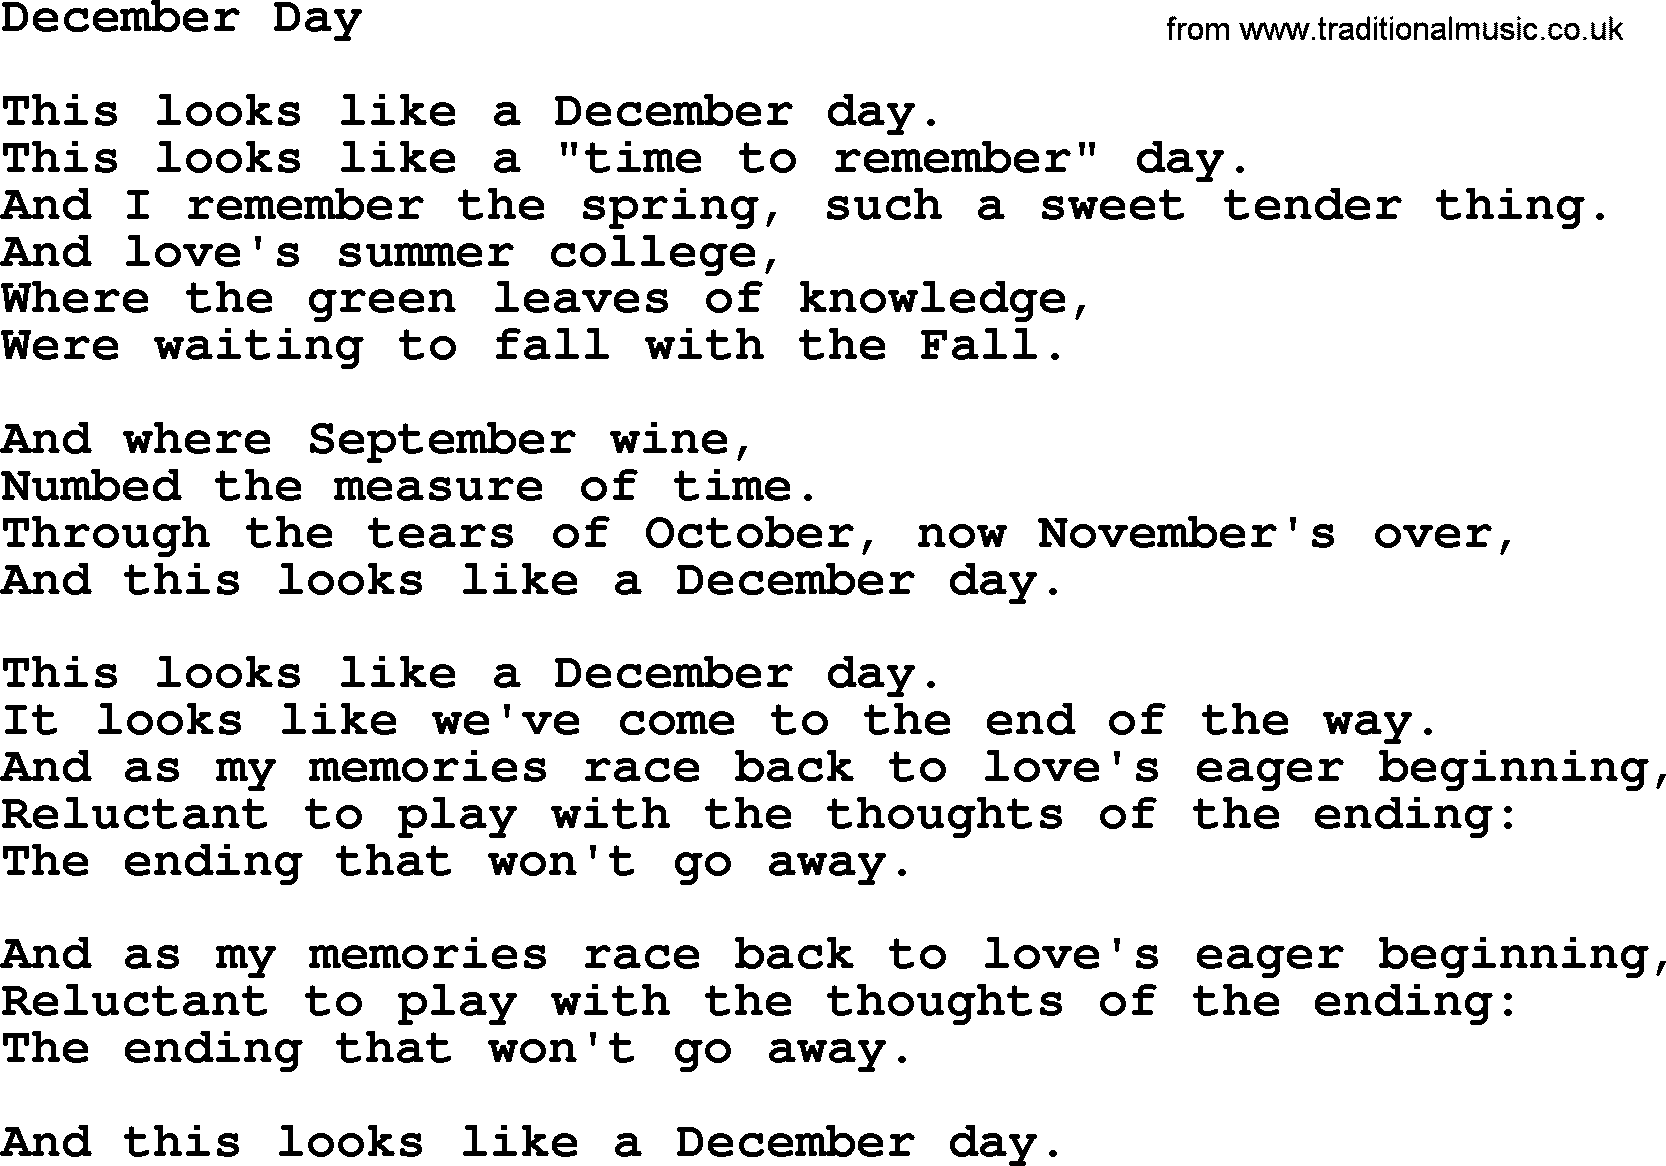 Willie Nelson song: December Day lyrics